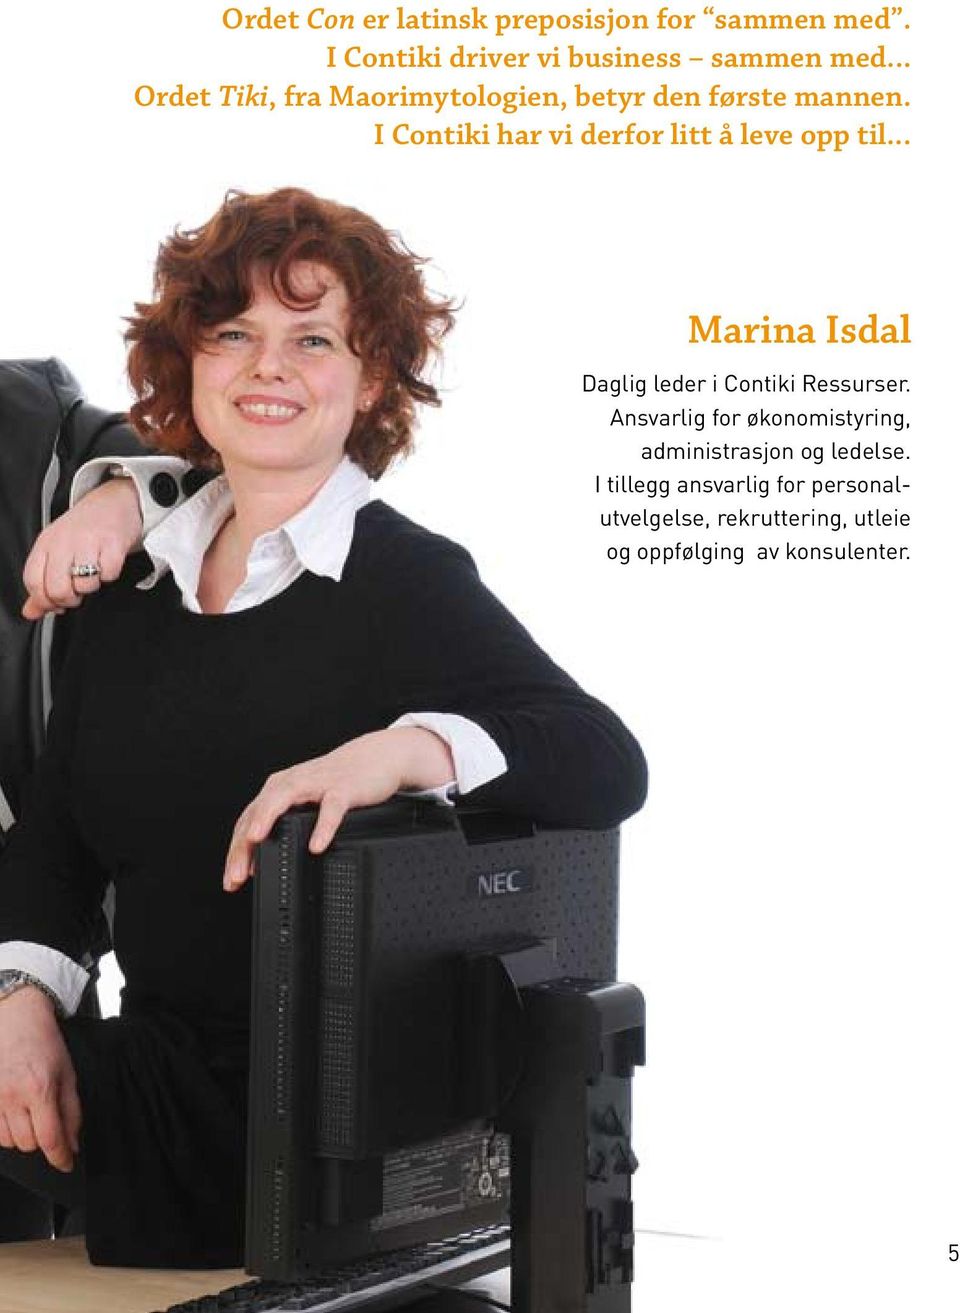 I Contiki har vi derfor litt å leve opp til... Marina Isdal Daglig leder i Contiki Ressurser.